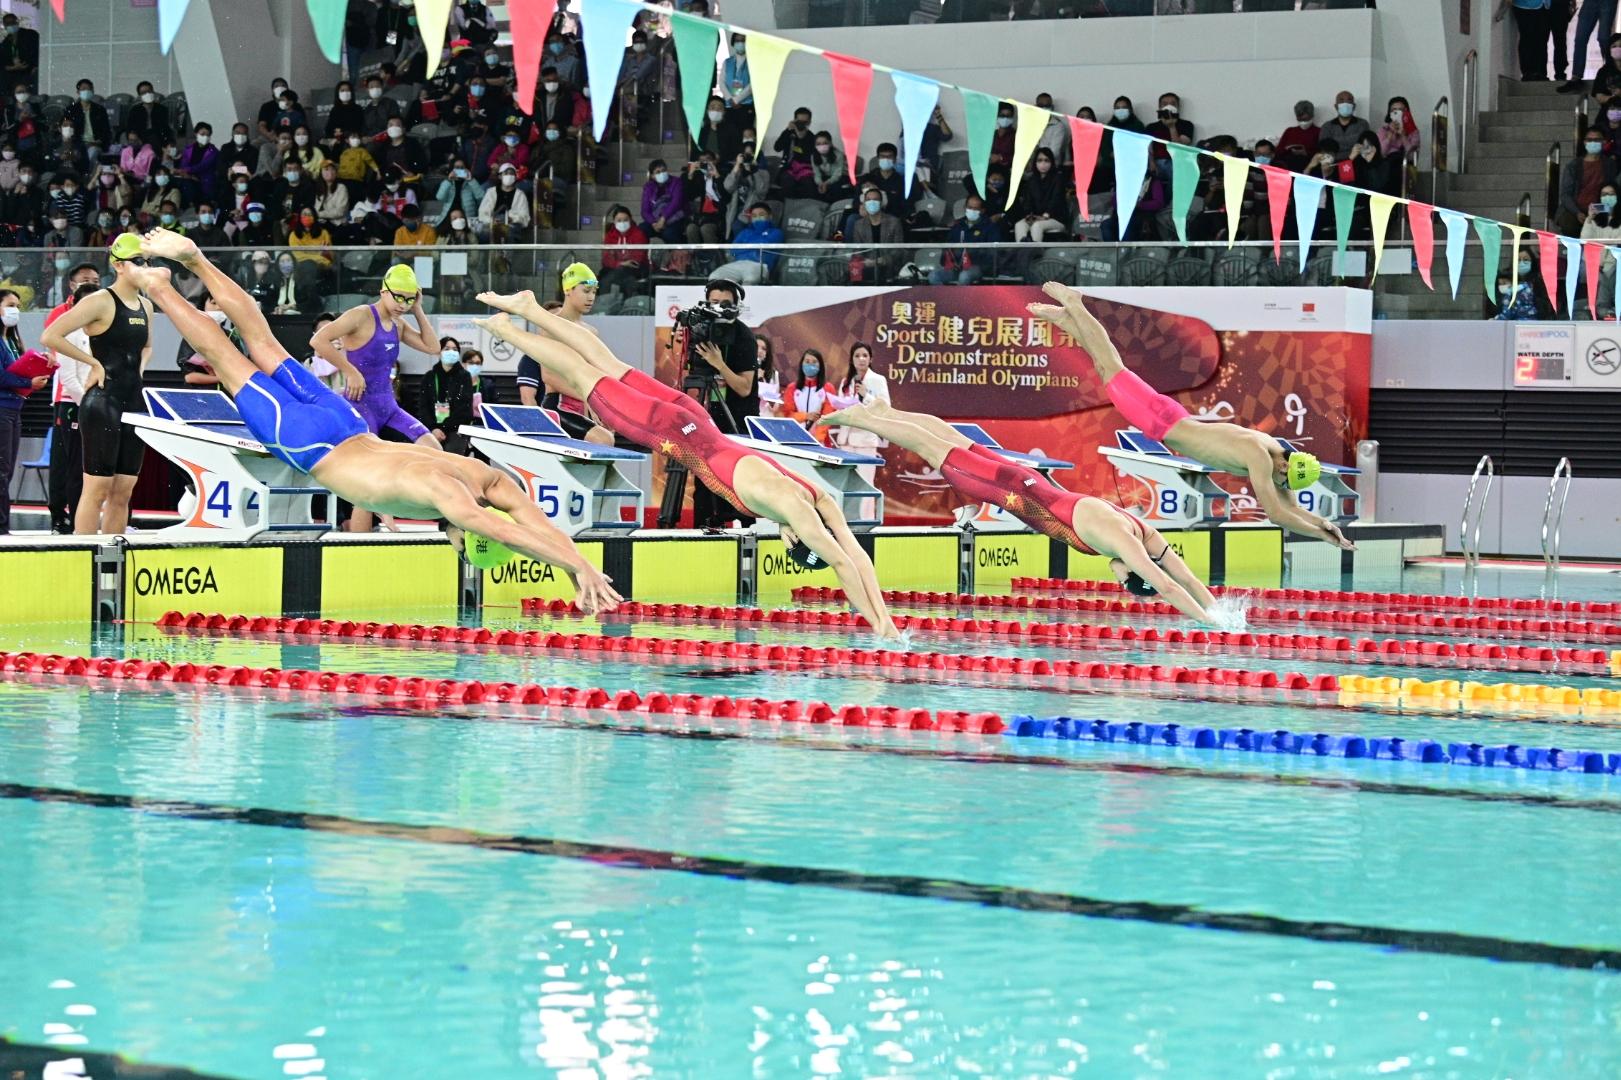 东京2020奥运会内地奥运健儿代表团今日（十二月四日）上午出席在维多利亚公园游泳池举行的「奥运健儿展风采」运动示范。图示内地游泳运动员与香港游泳运动员组队进行接力赛。